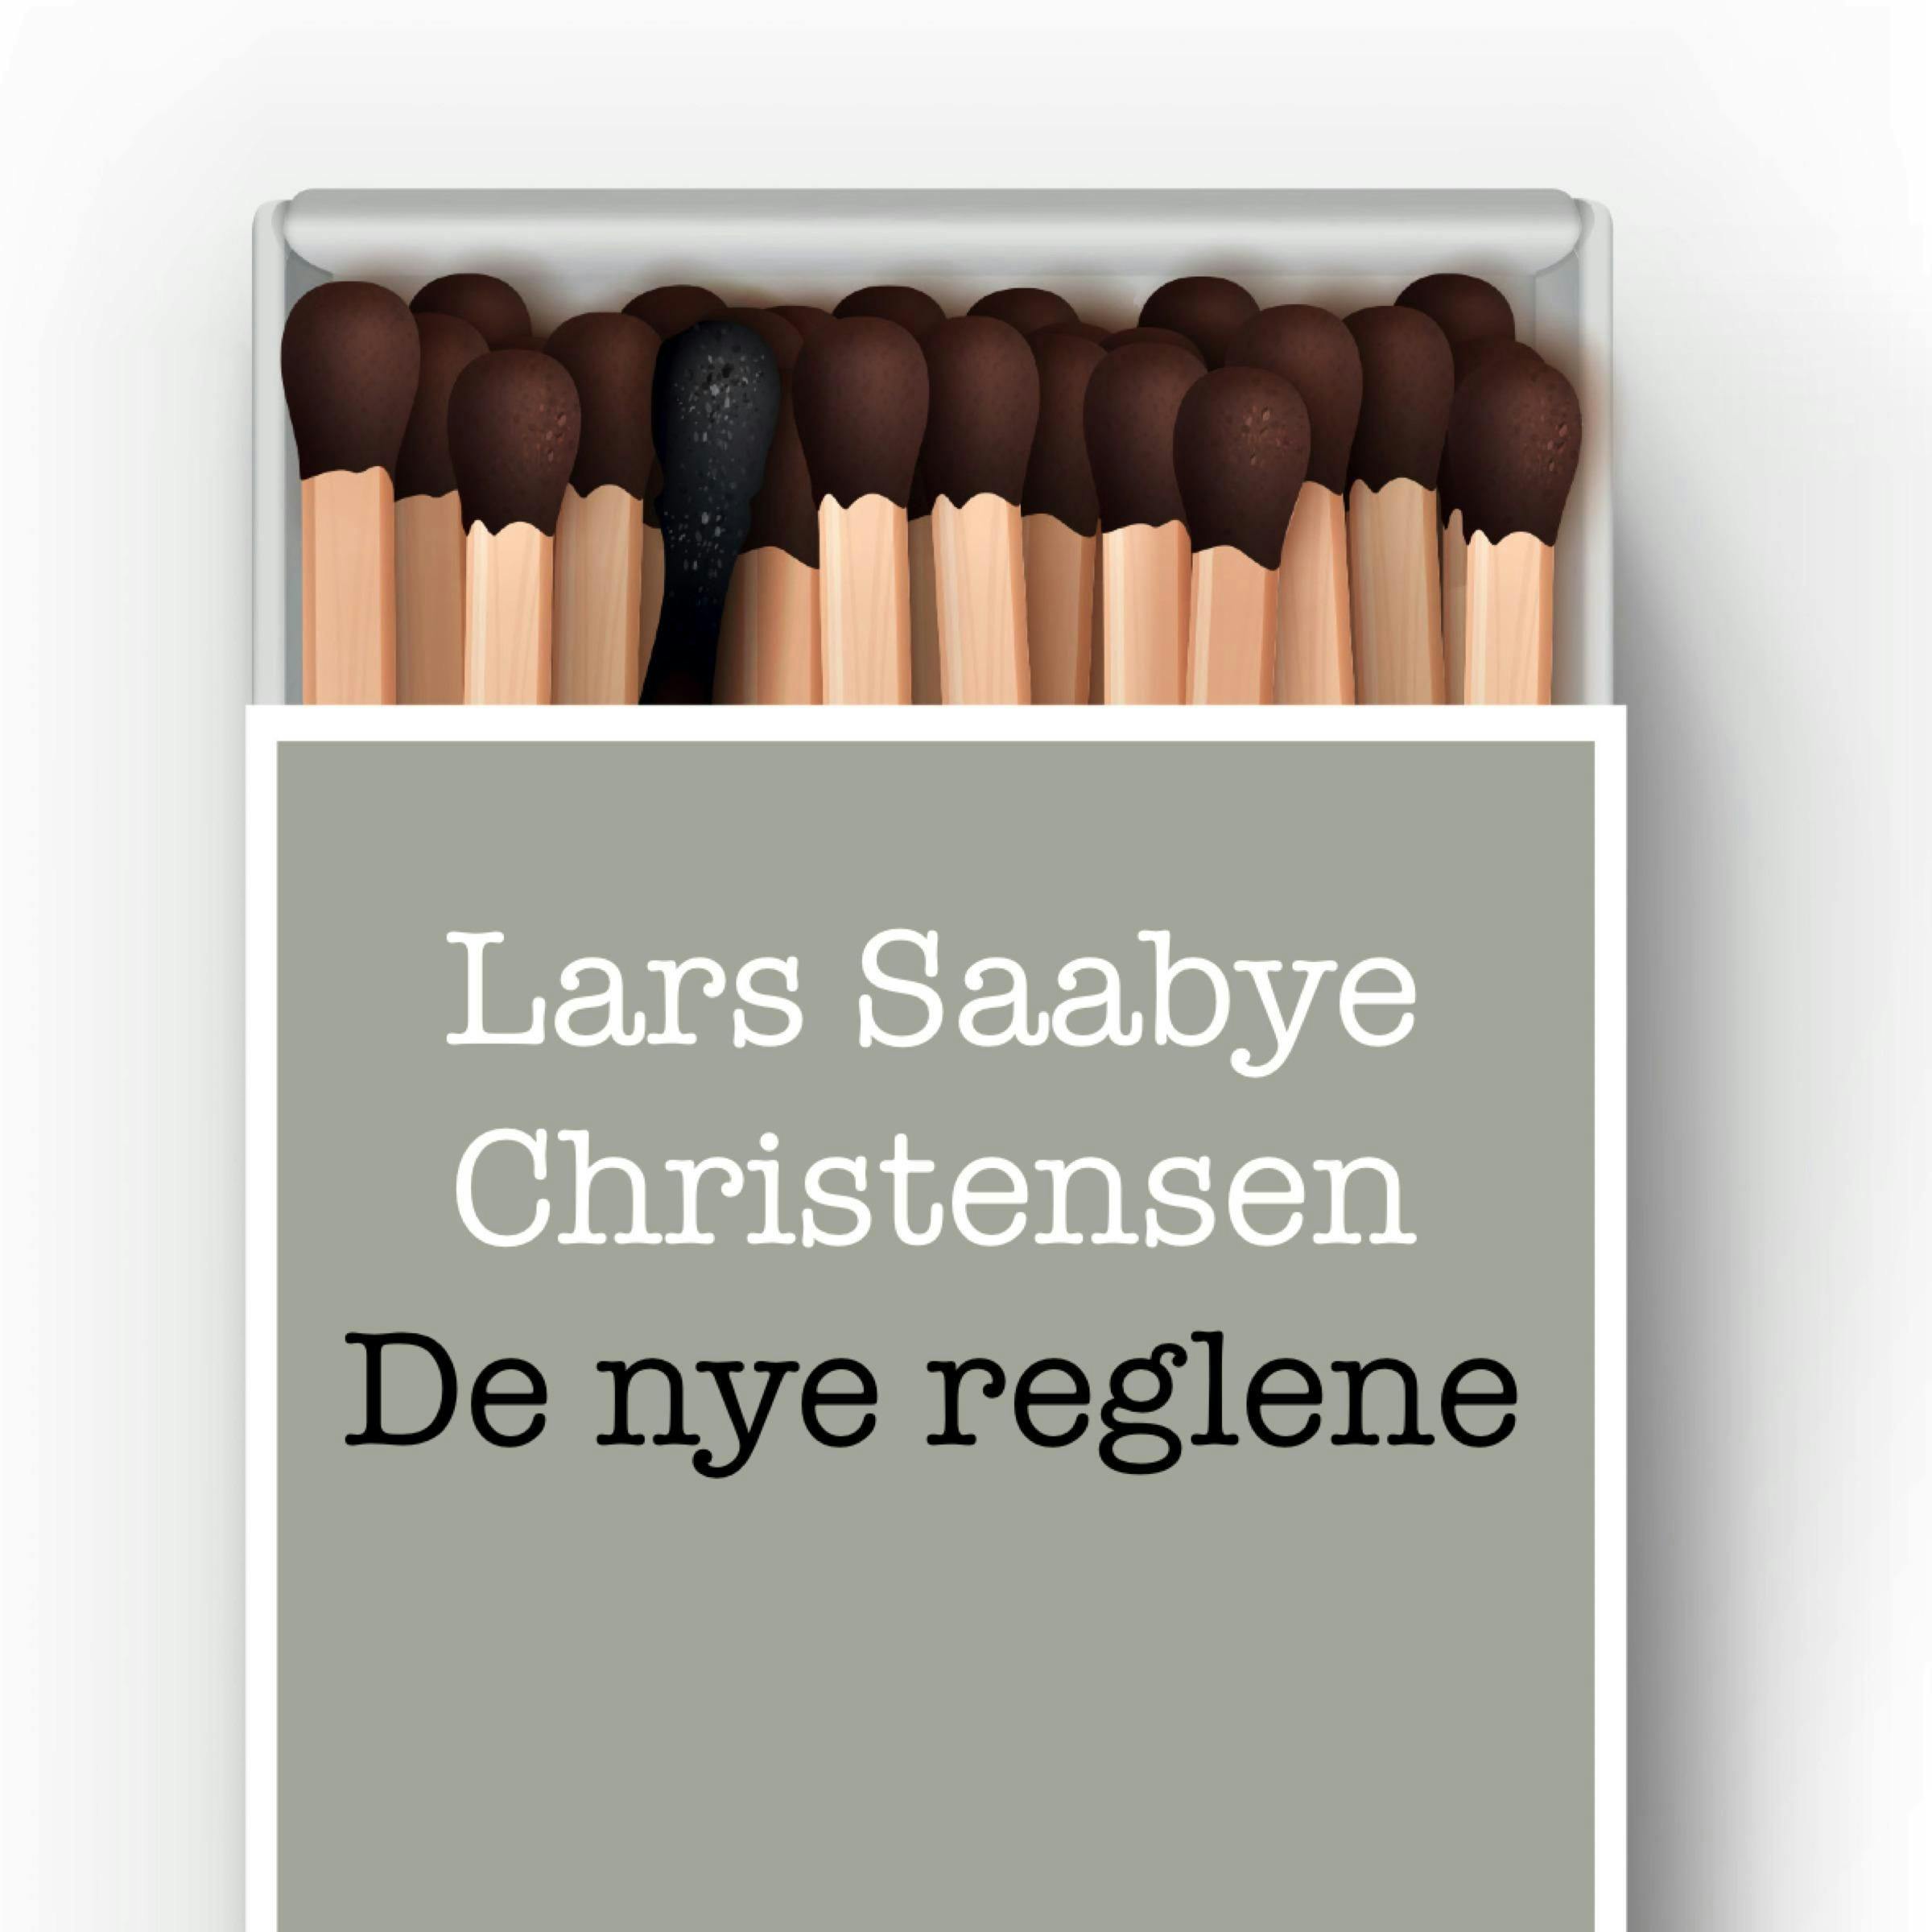 De nye reglene - Lars Saabye Christensen